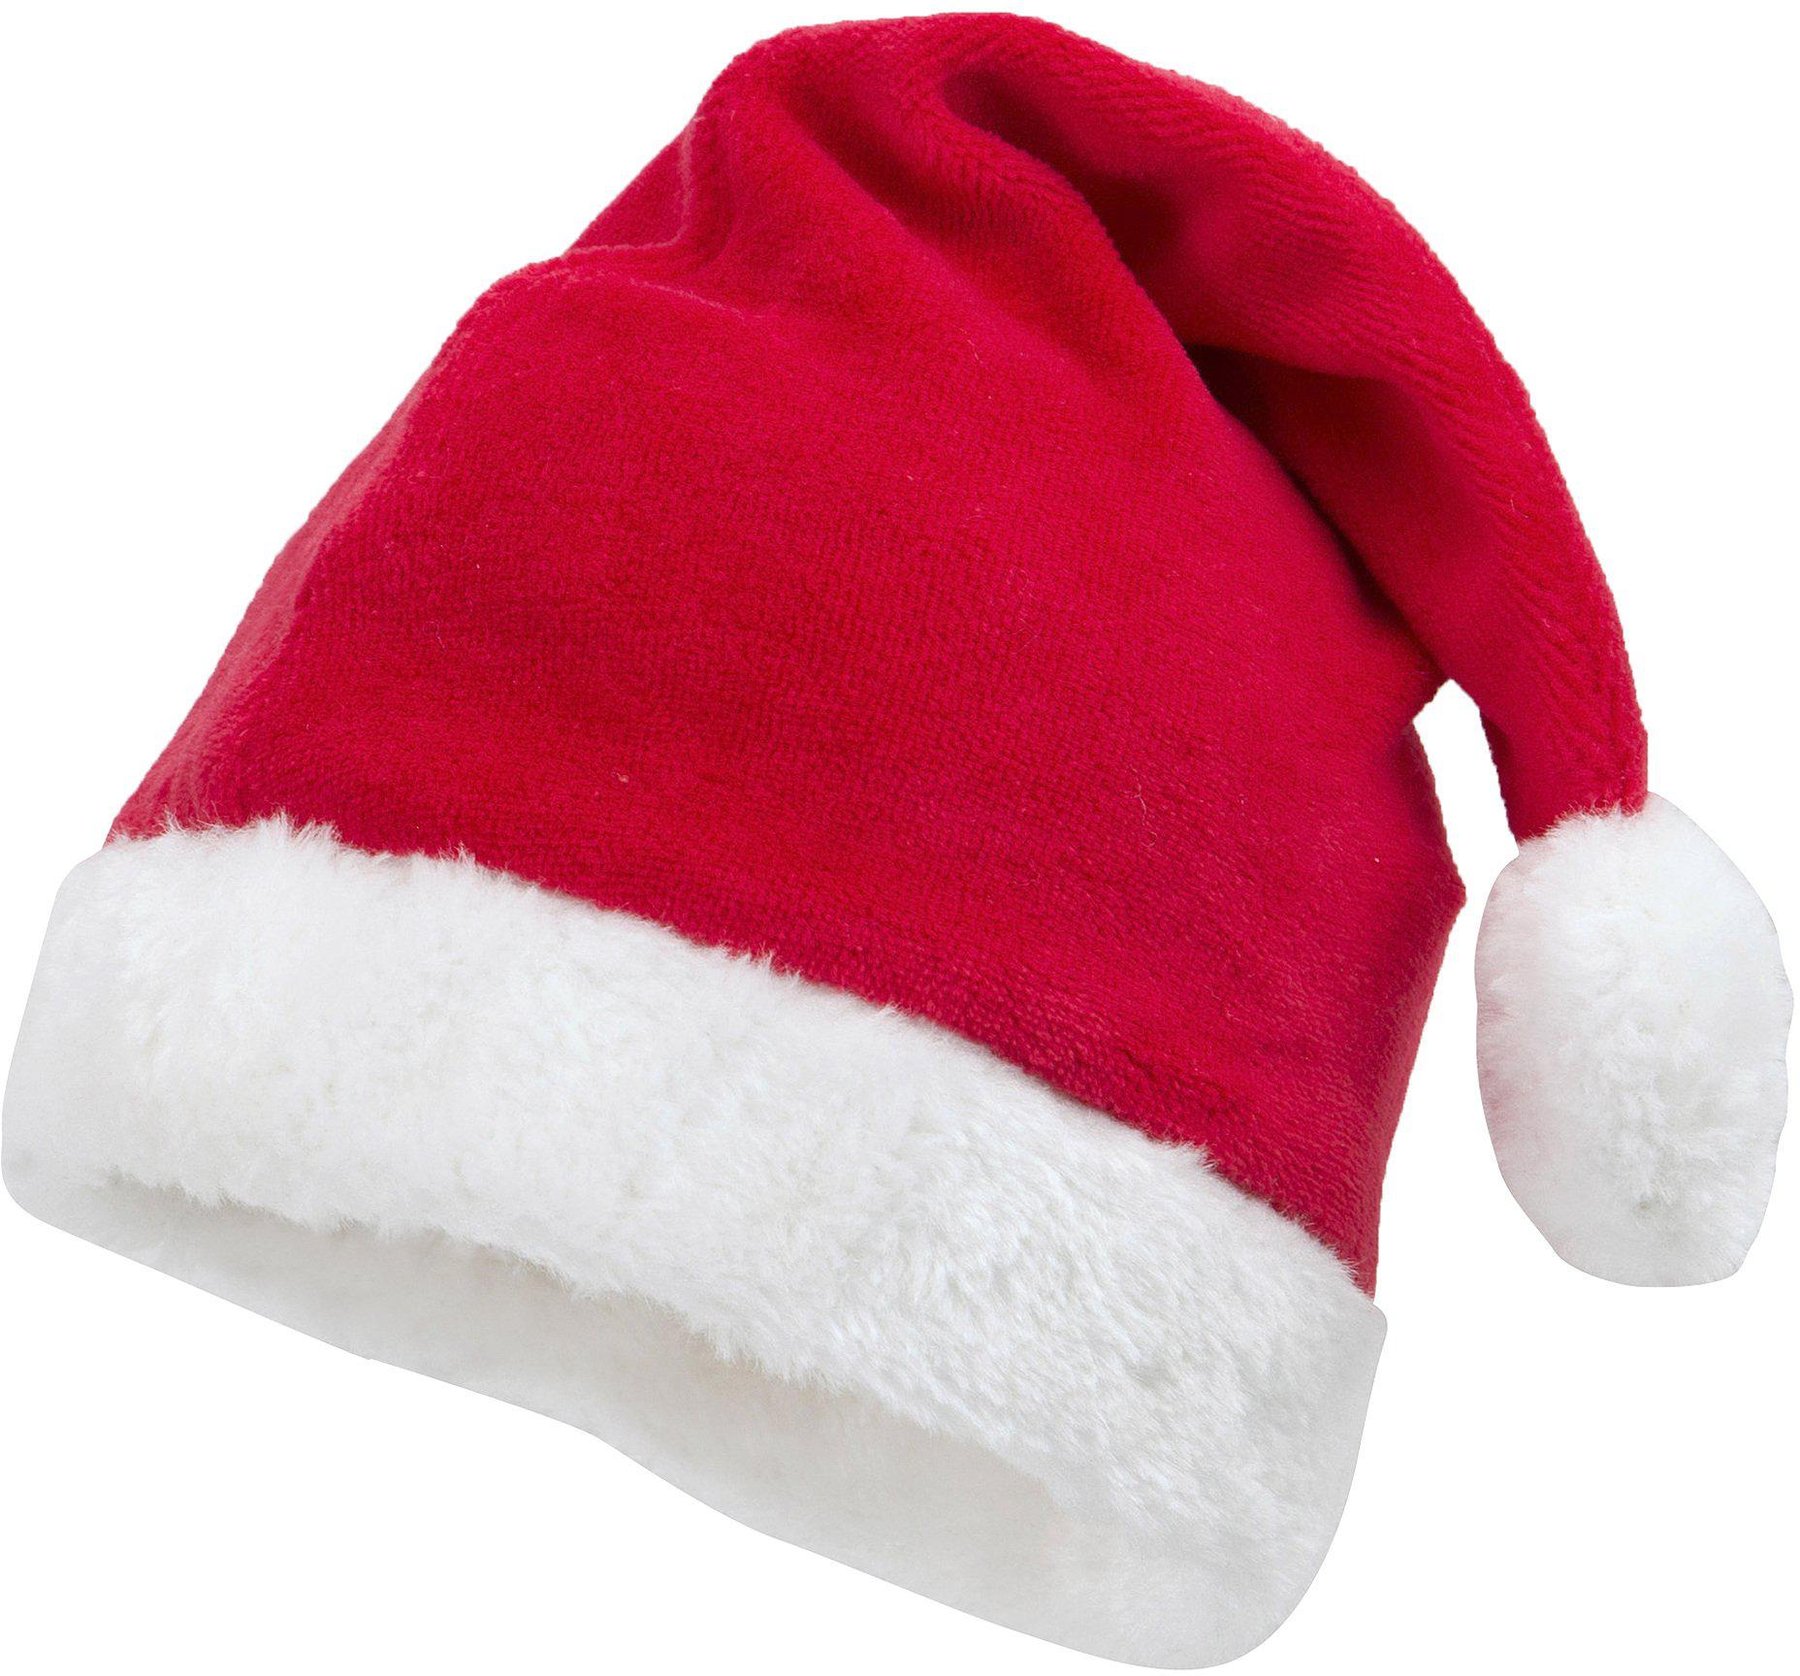 Hawaiikette rot weiß Weihnachten Weihnachtsmann Nikolausmütze Weihnachtsmütze